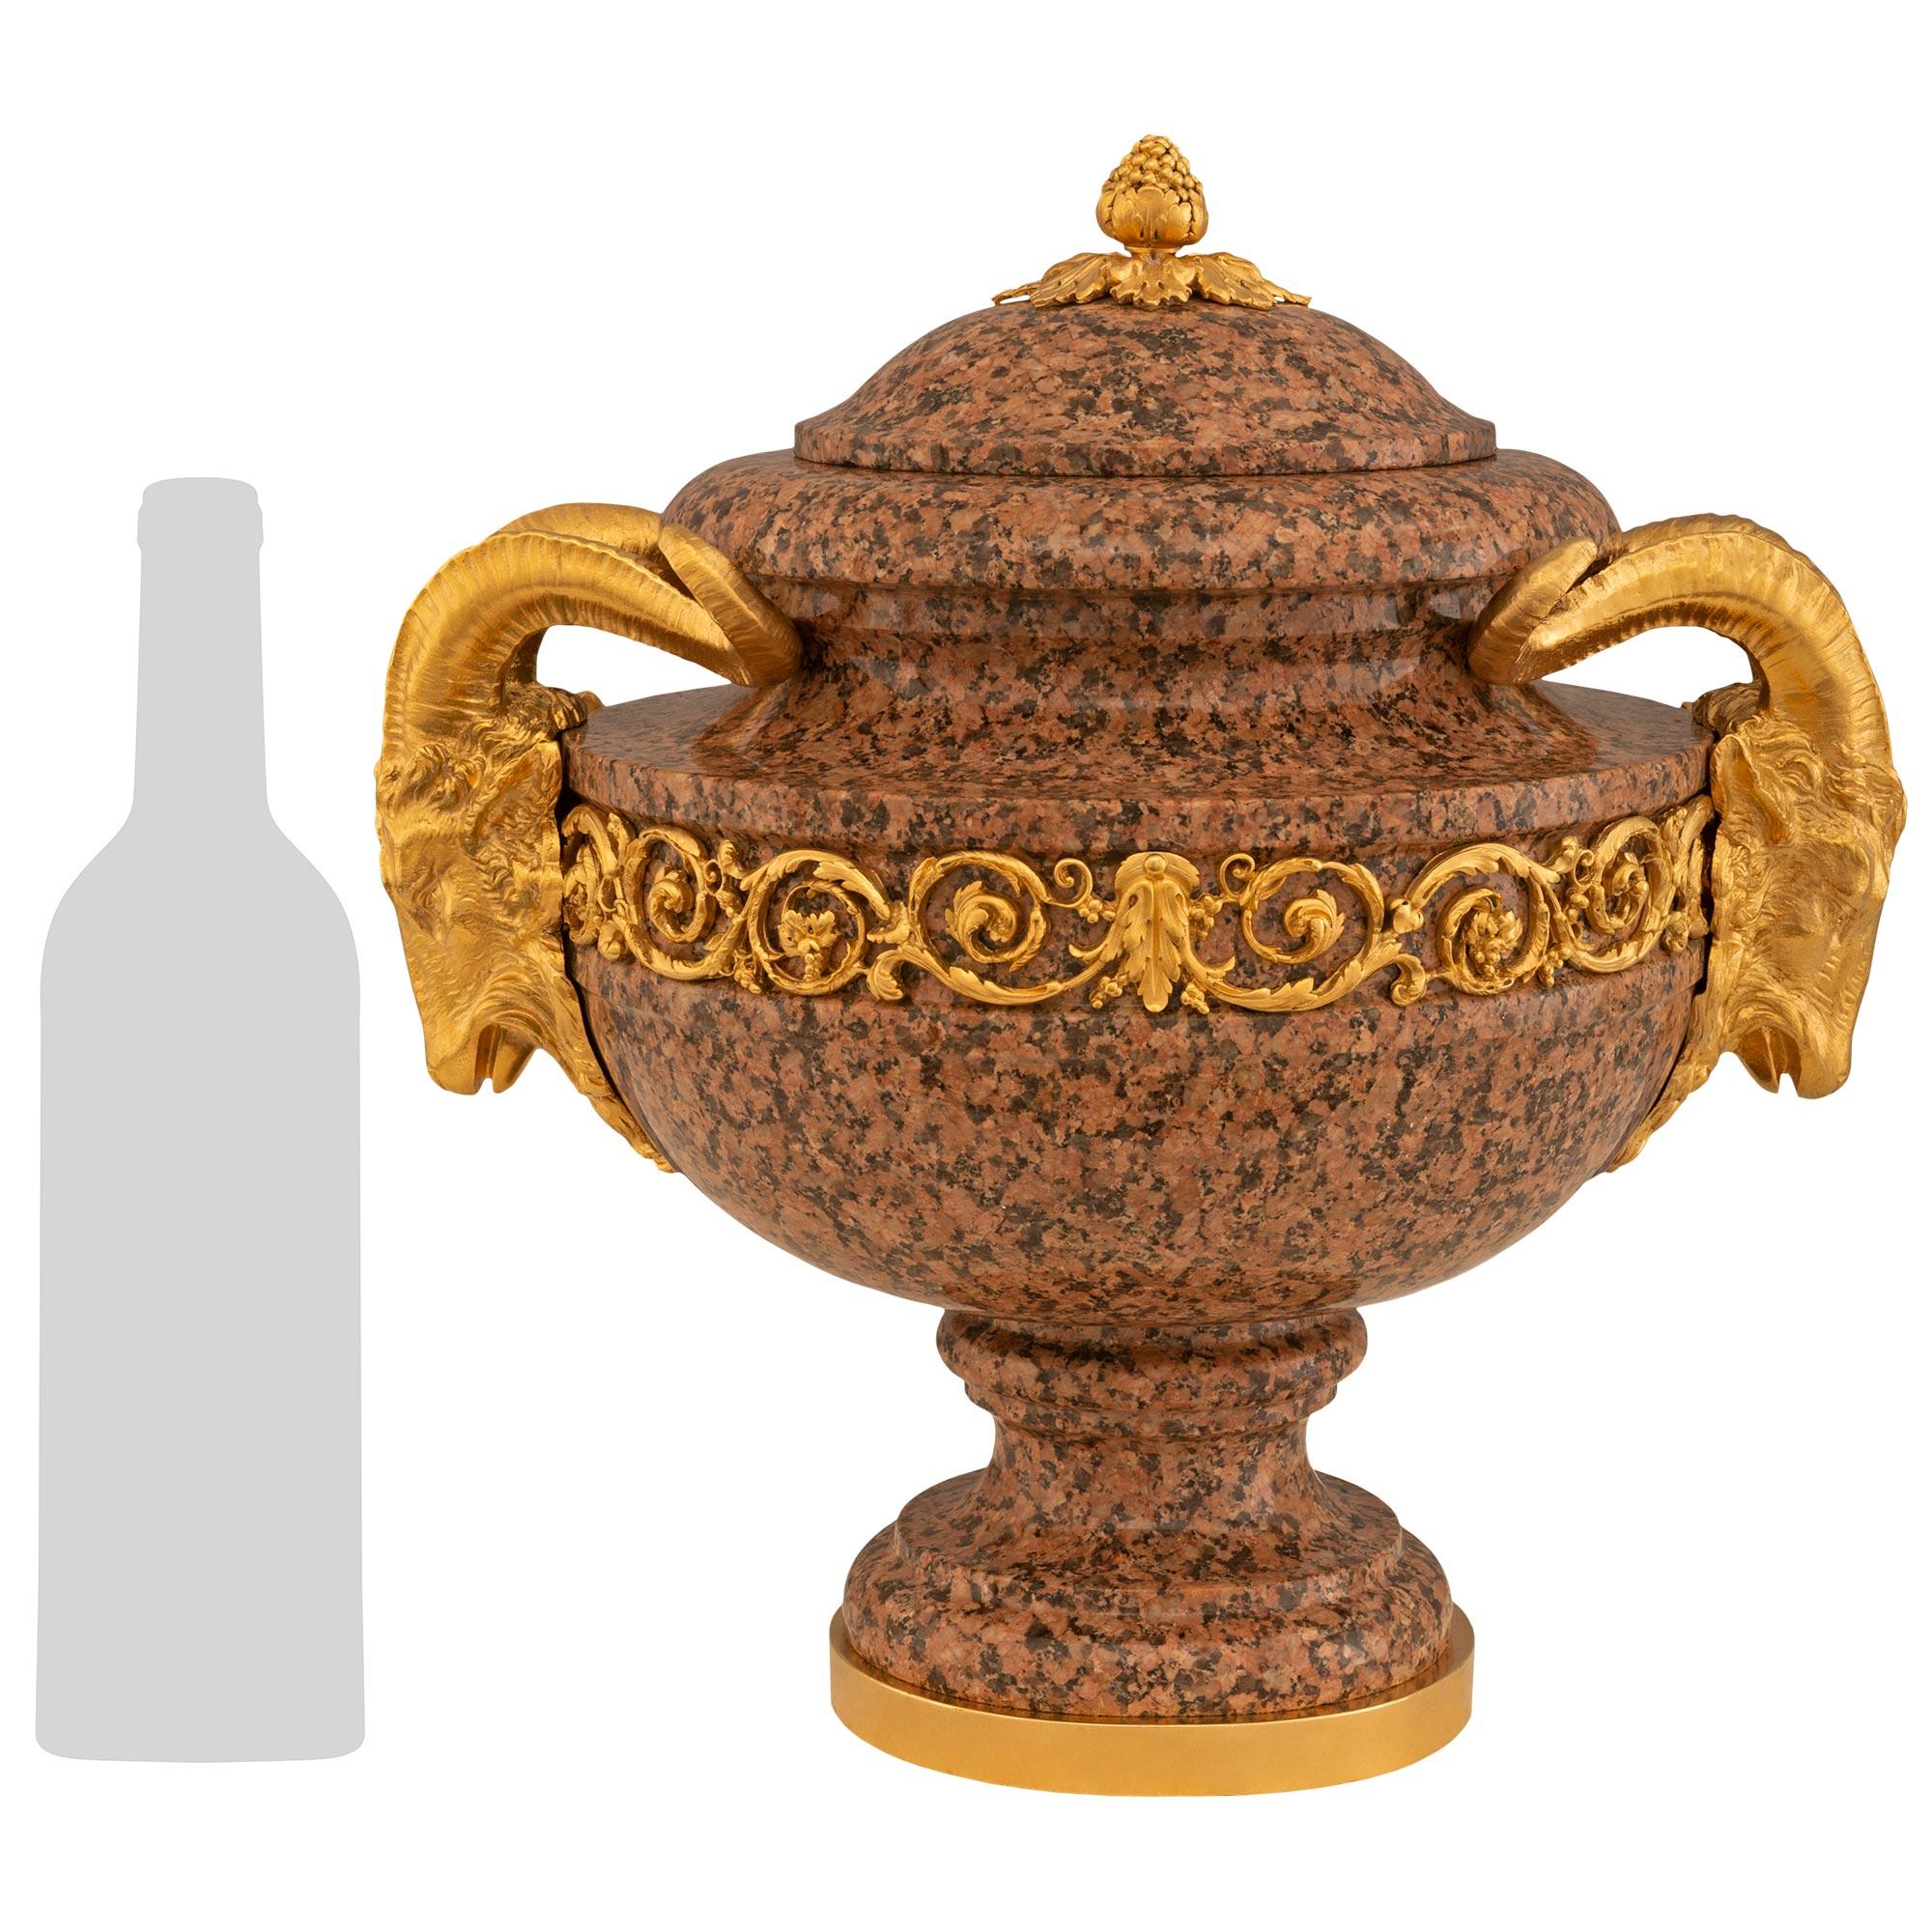 Une paire impressionnante et extrêmement décorative d'urnes à couvercle en granit rose et bronze doré de style Louis XVI du XIXe siècle. La paire repose sur des bases circulaires en bronze doré sous le socle en granit tacheté. L'urne est surmontée